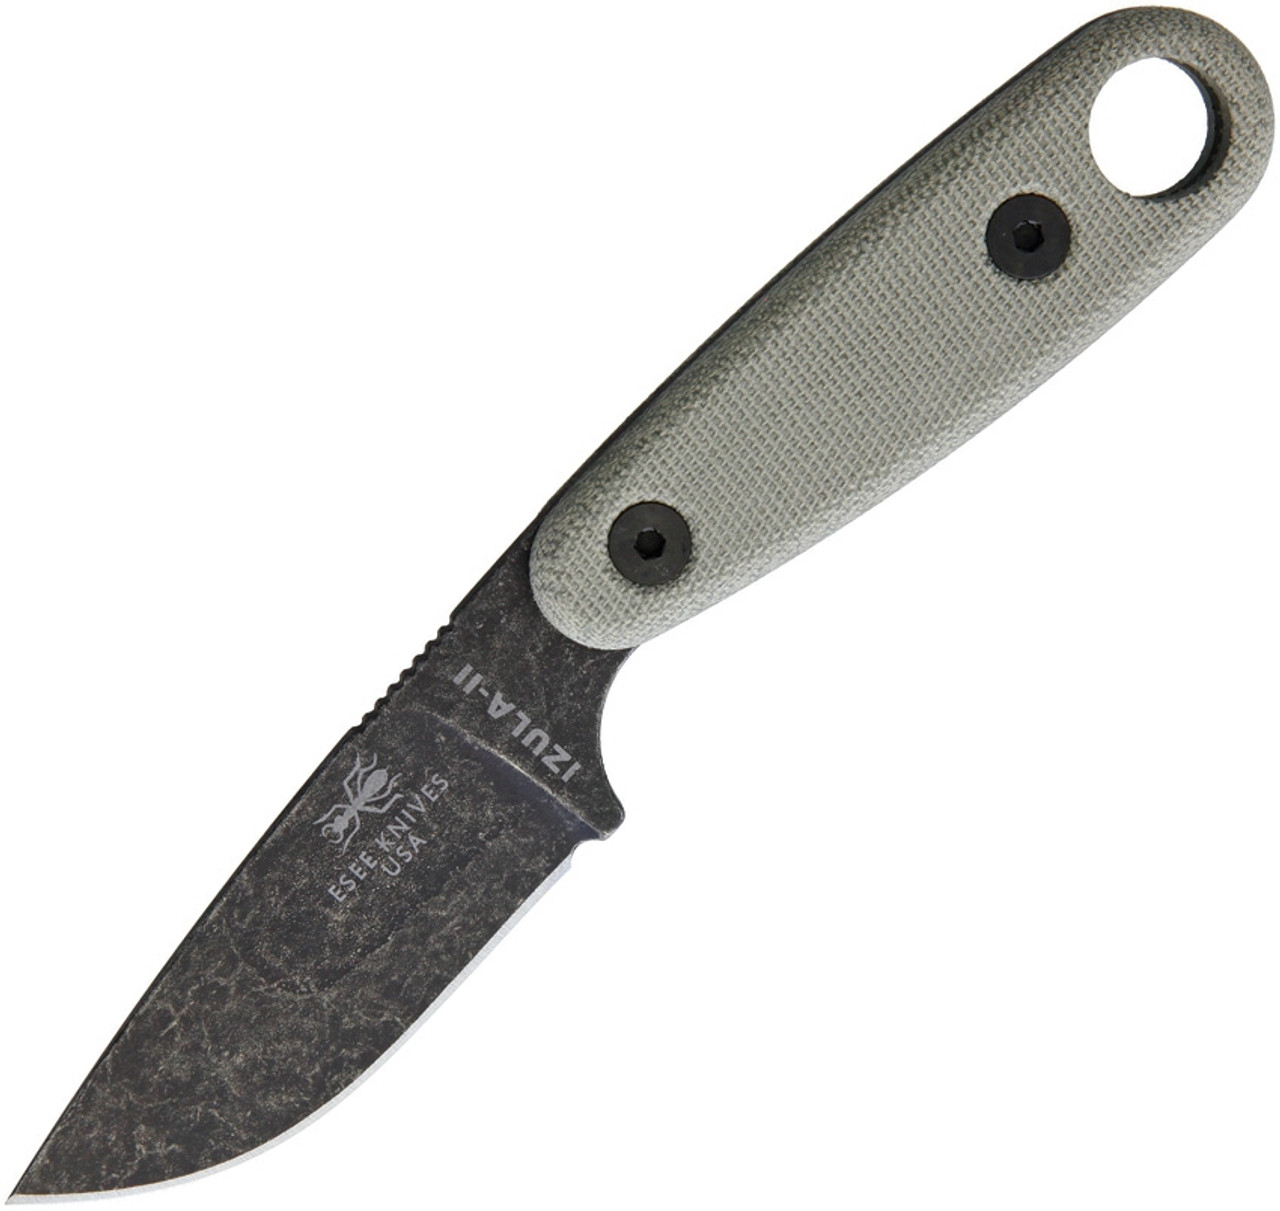 ESEE-Izula II Fixed Blade Knife (IZULA-II-BO) 2.63" Black Oxide 1095 Drop Point Blade, Tan Micarta Handle